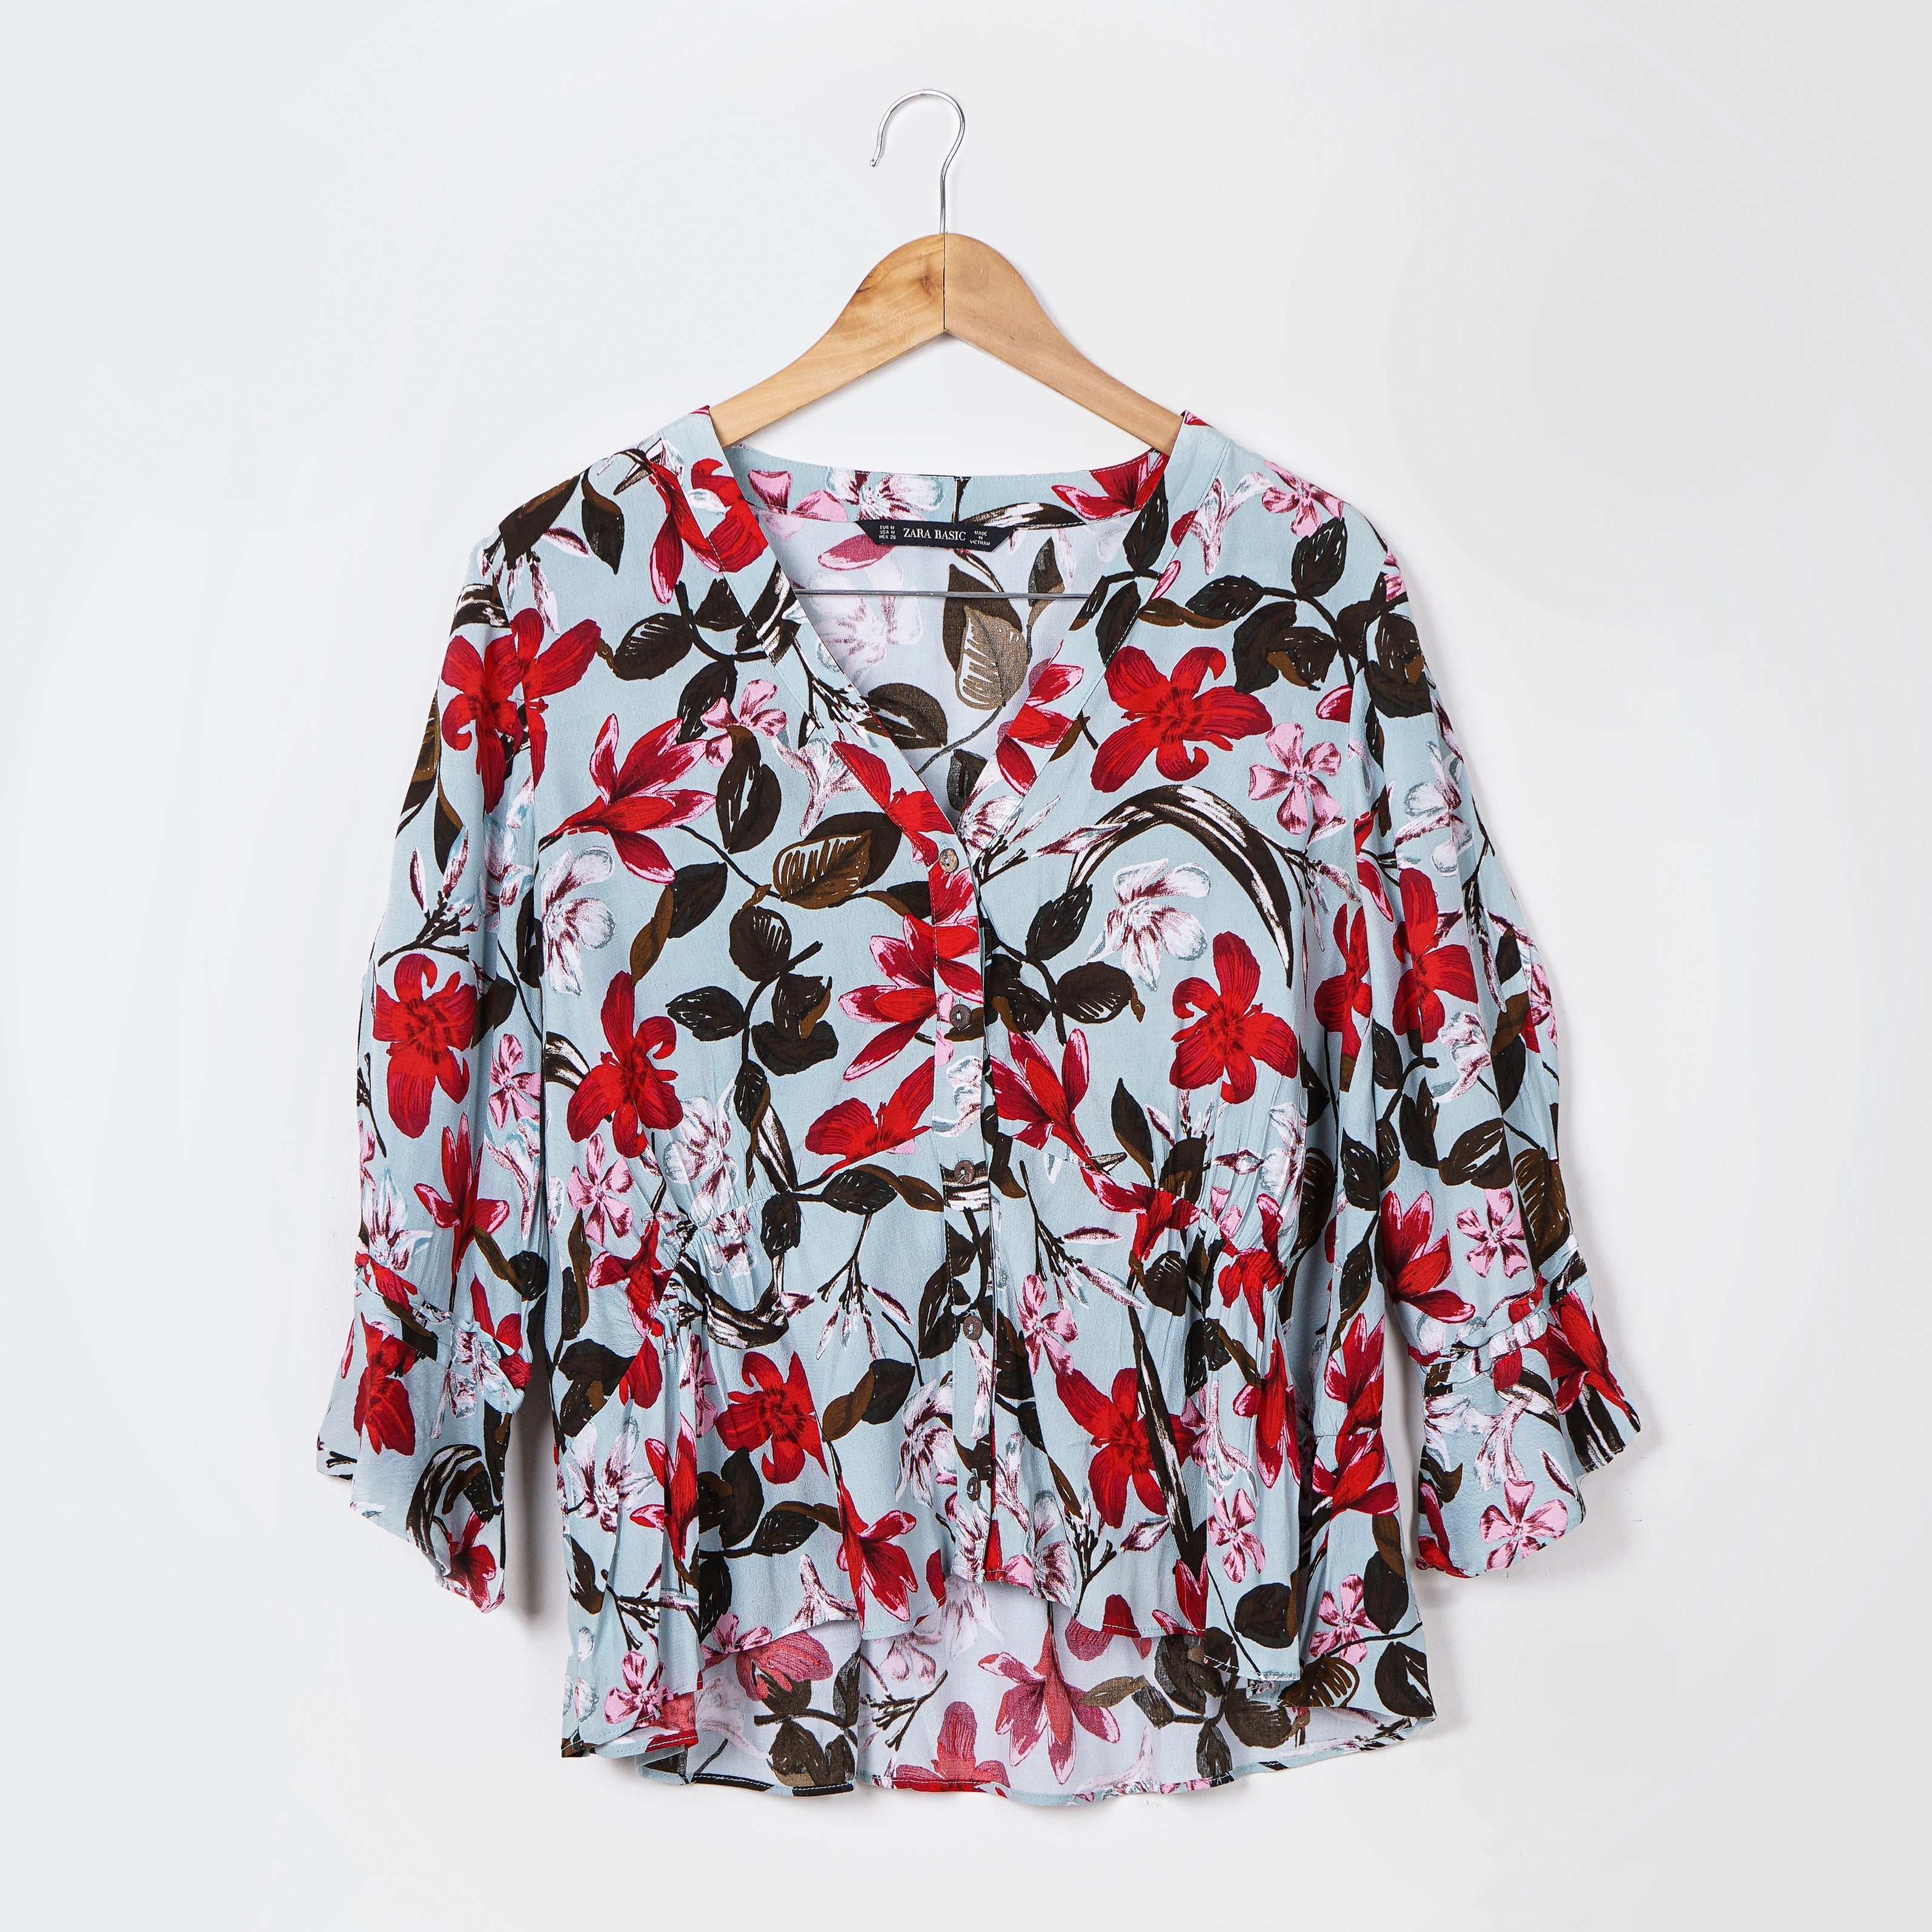 Original Zara Floral Print V Neck Shirt - Marca Deals - Zara